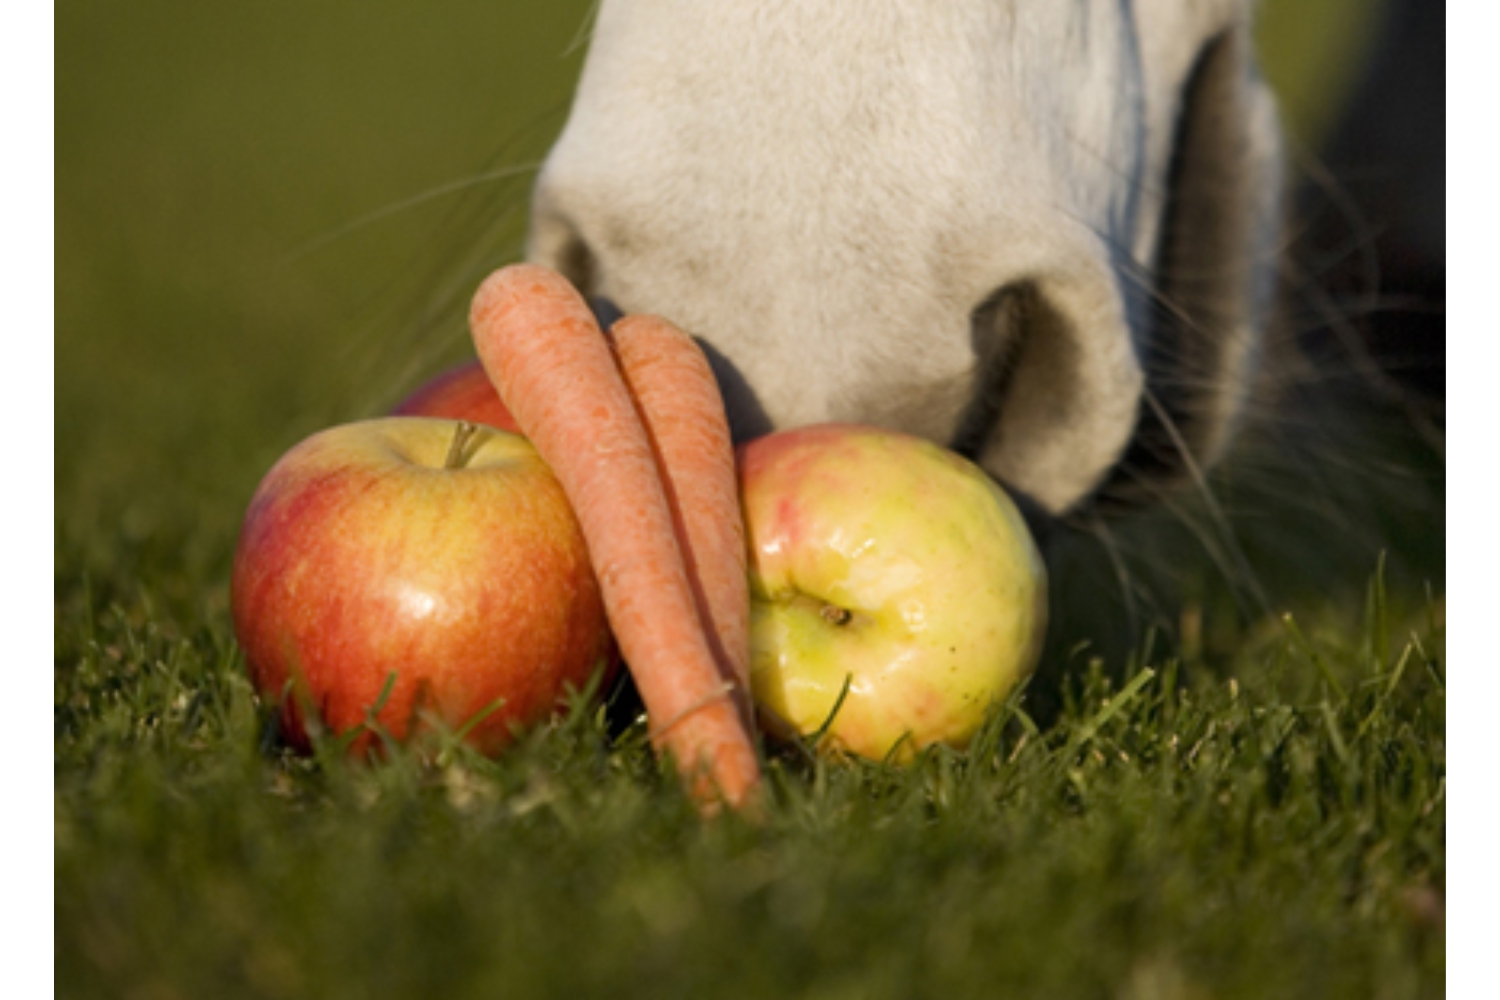 Net zoals wij zelf, houden ook paarden van een lekker tussendoortje. U kunt bij een gezonde snack denken aan fruit, maar ook aan speciale gezonde paardensnoepjes.